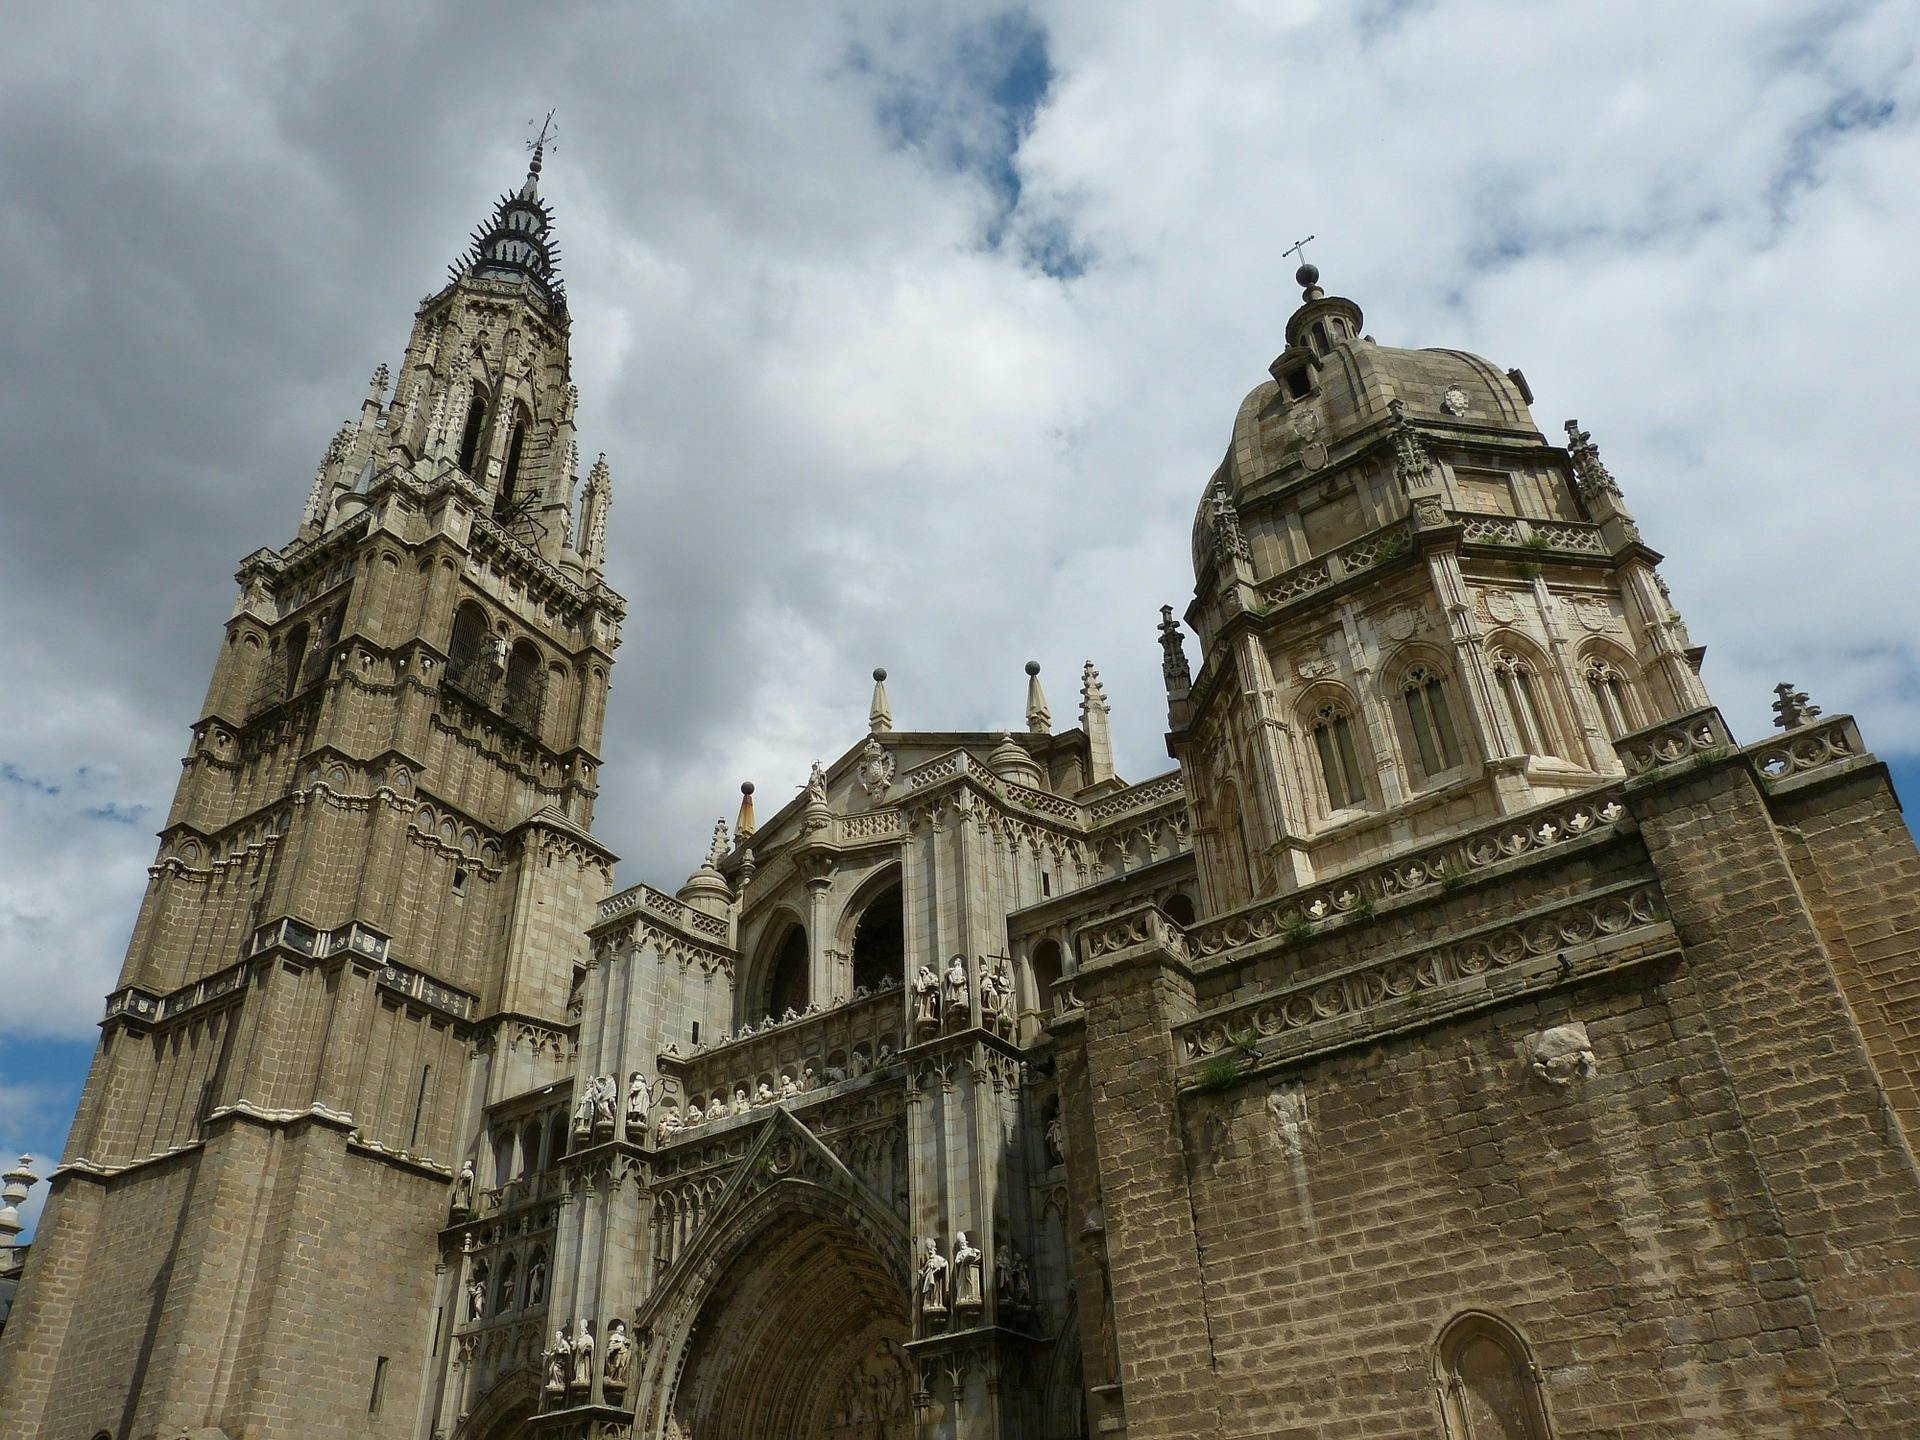 Półdniowa wycieczka do Toledo z Madrytu